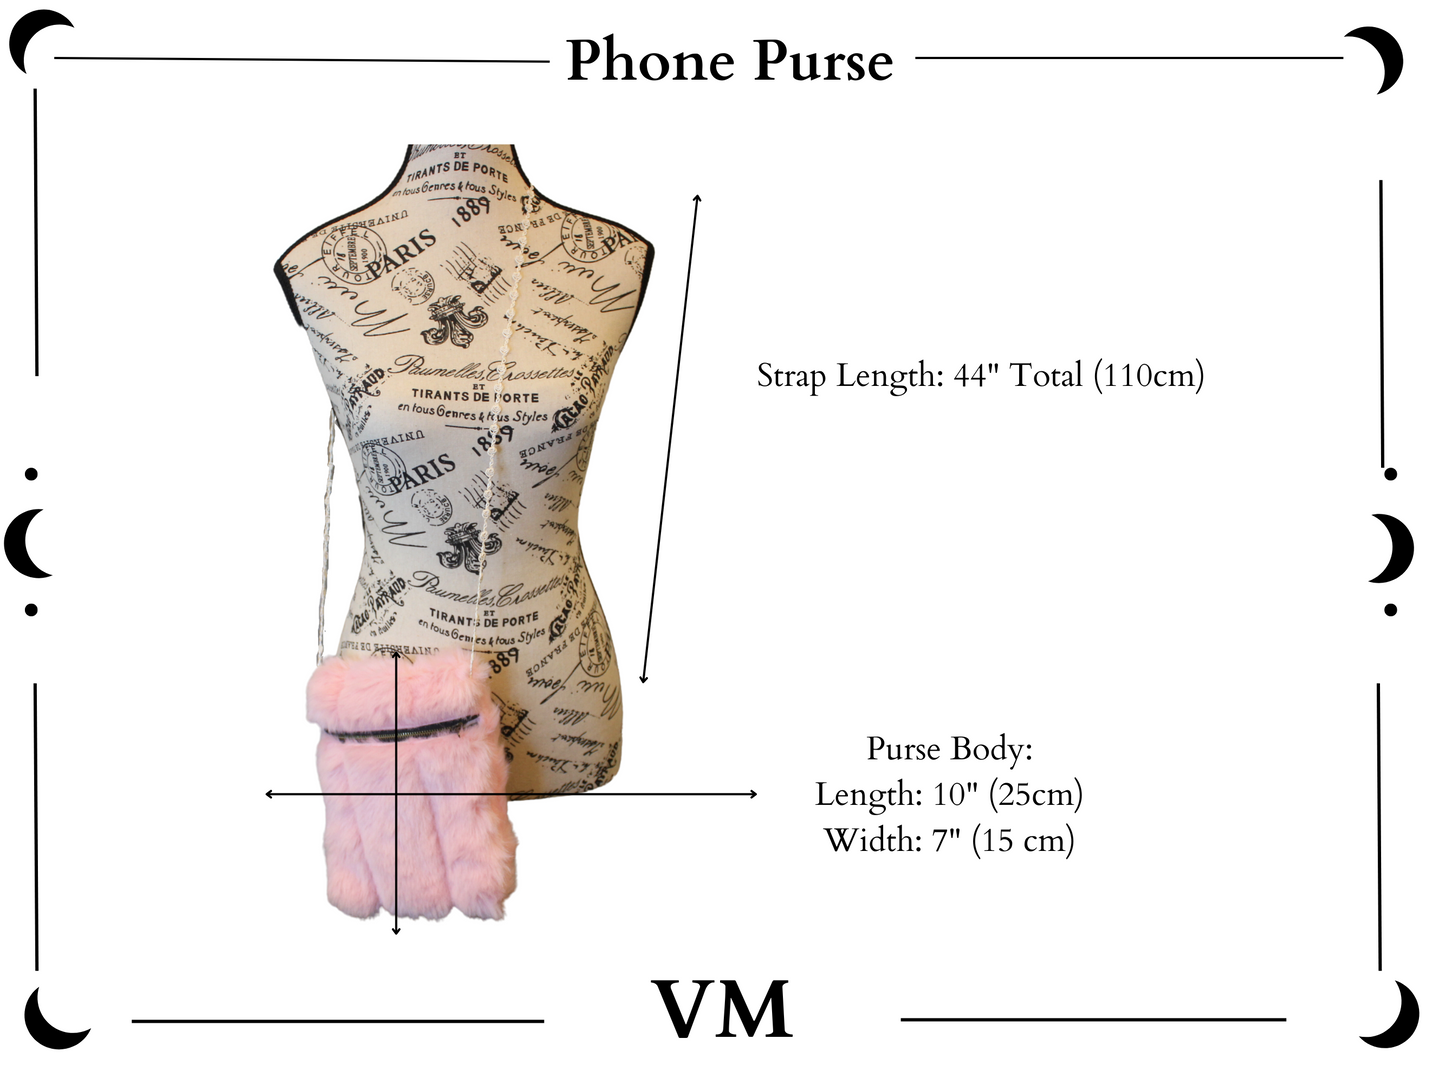 The VM Faux Fur Phone Purse